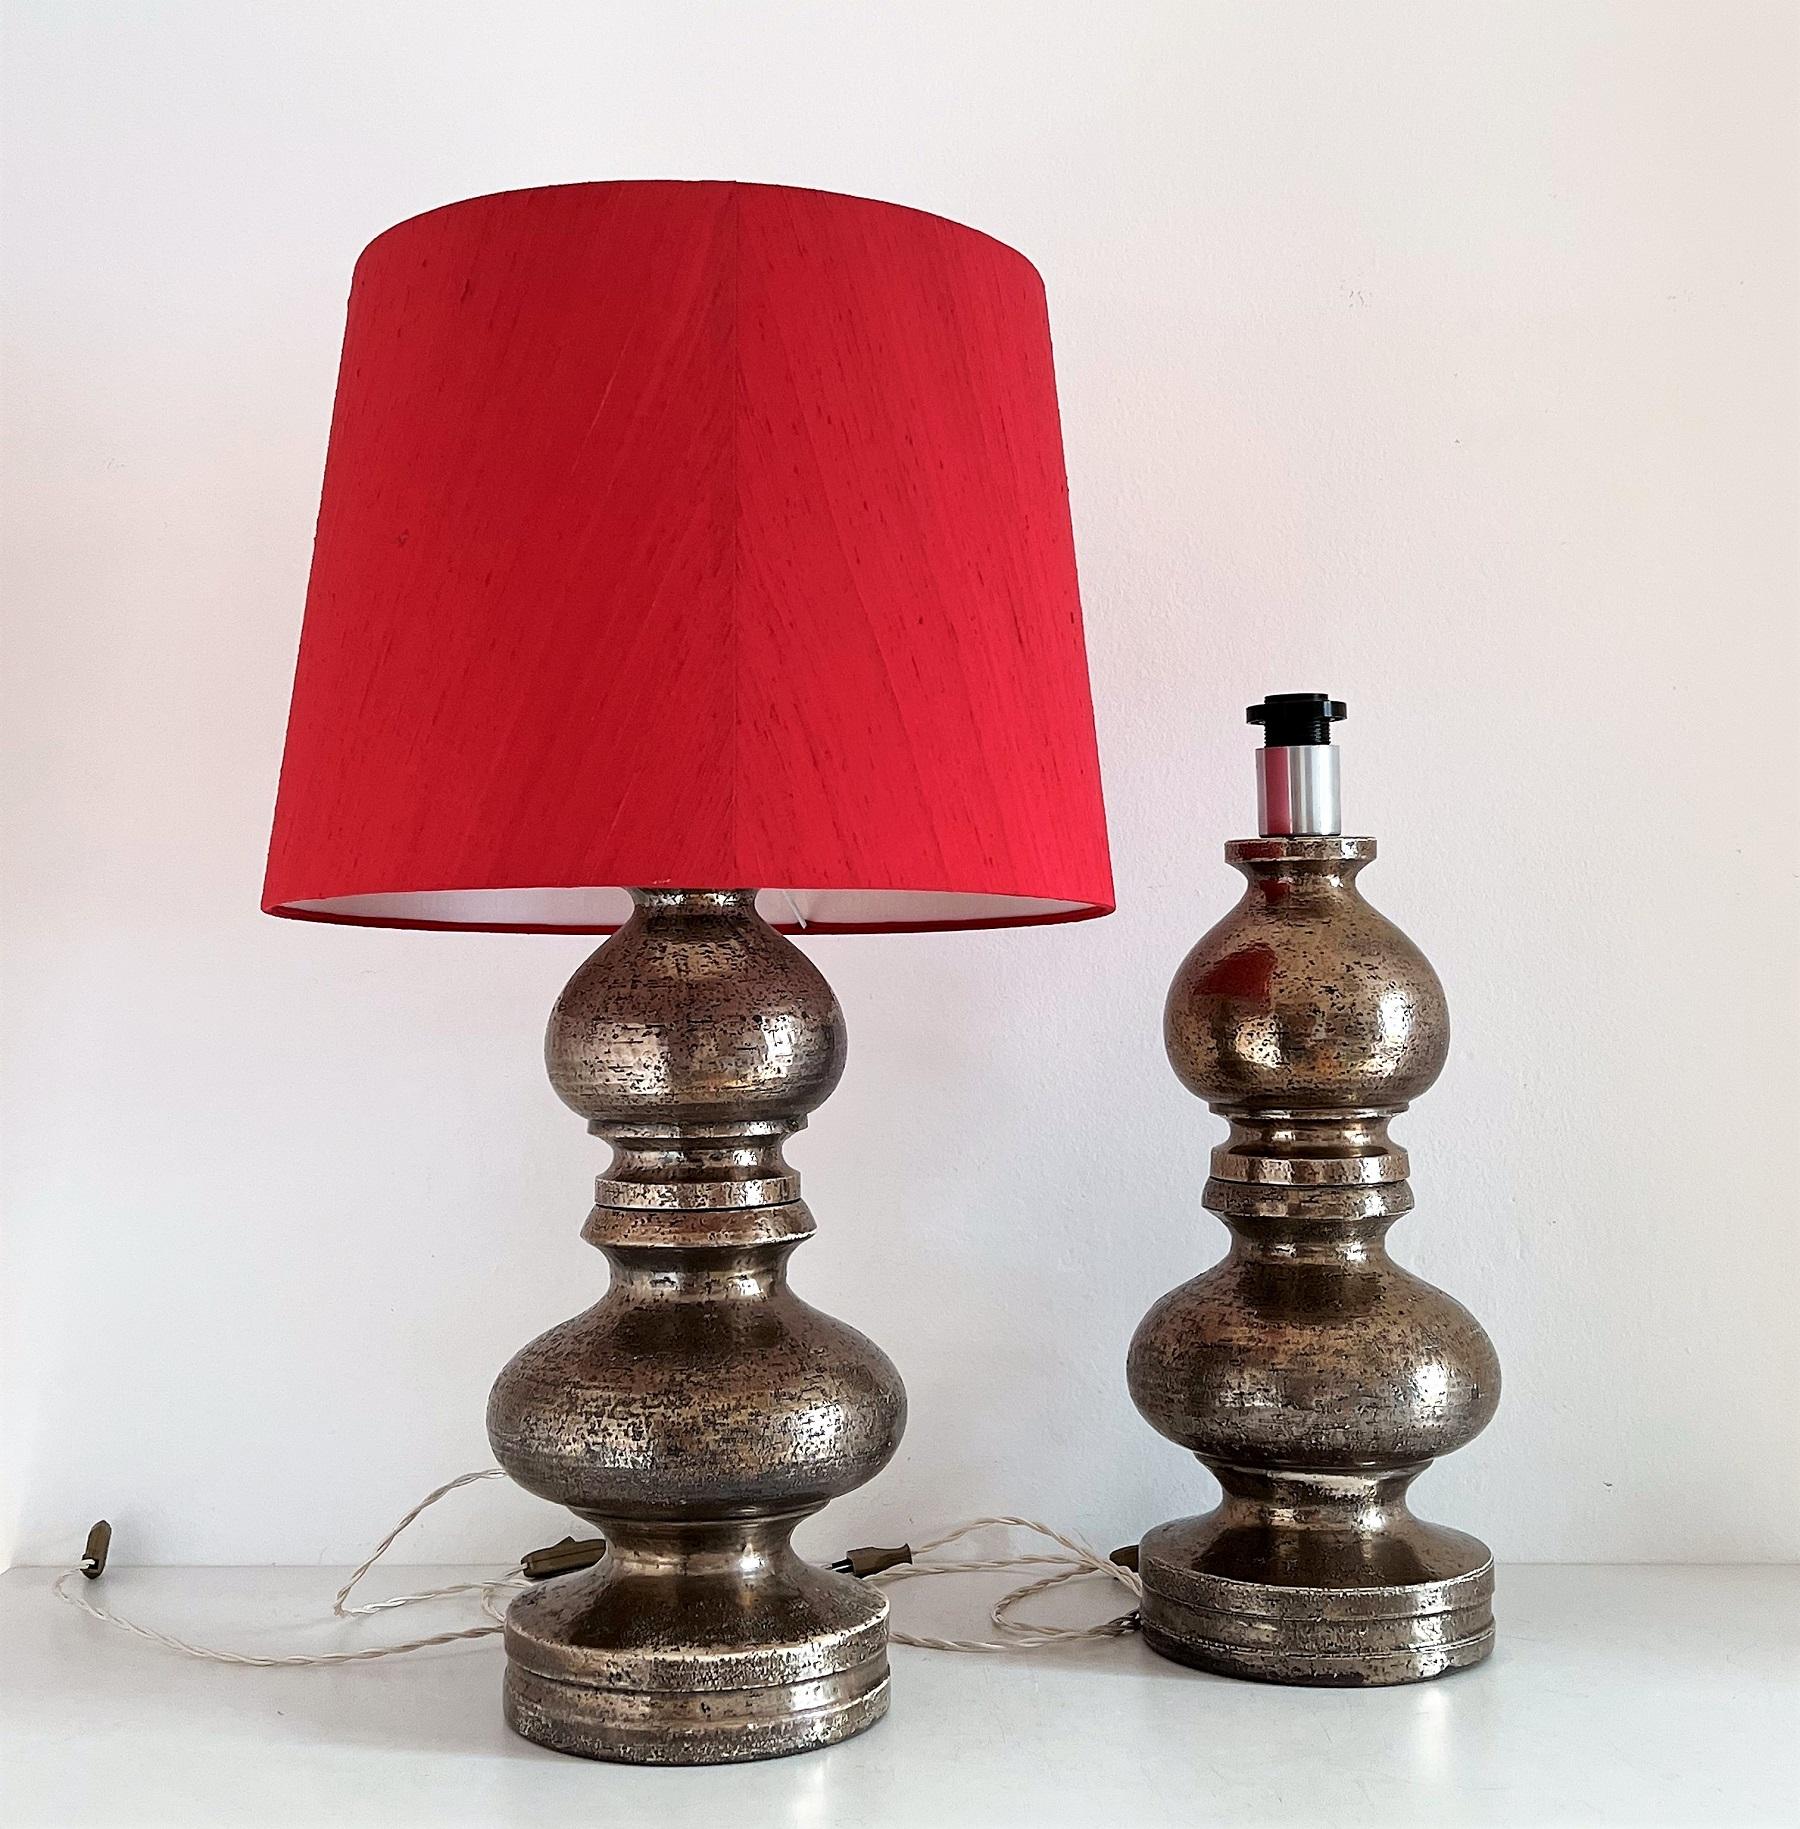 Magnifique et assez rare ensemble de deux grandes lampes en poterie conçues par Aldo Londi et fabriquées par Bitossi, Italie, au cours des années 1960.
Fabriqué en poterie lourde - céramique et émaillé dans une magnifique couleur argentée ou platine